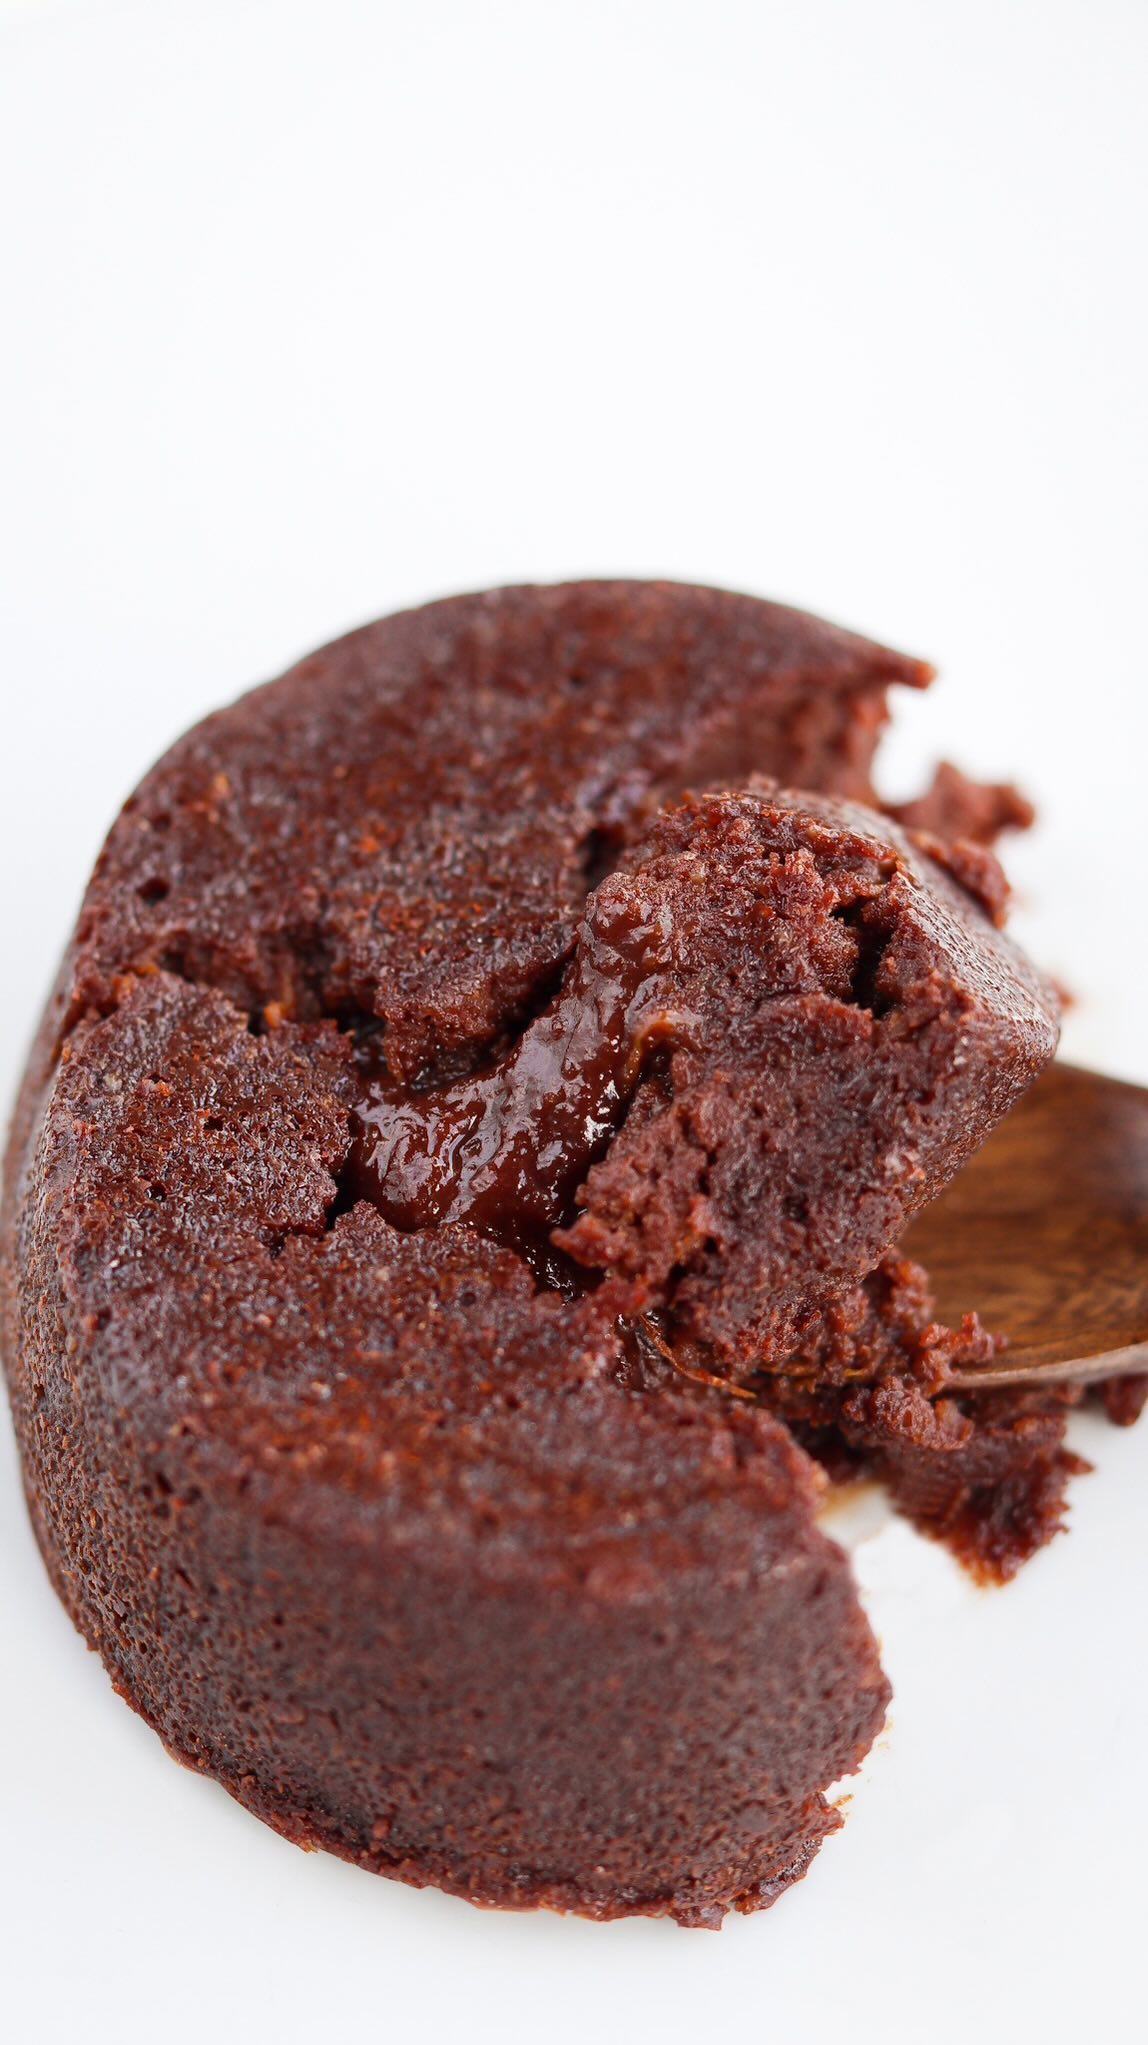 | Coulant chocolat & potimarron |

On reste dans la saison avec un dessert gourmand : un gâteau coulant au chocolat et au potimarron (que l’on ne sent pas) qui apporte une texture incroyable. Tentés ?Comme tous les fondants au chocolat, la difficulté de la recette va se trouver dans la cuisson. Si vous le cuisez une minute de trop, vous n’aurez pas cette texture.

Pr 6-8 coulants : 150g de chocolat noir
50g d’huile de coco
70g de sucre de coco ou cassonade ou complet
2 gros oeufs
125g de purée de potimarron
75g de poudre d’amande
pincée de fleur de sel
On enfourne 8 à 12 minutes, j’ai cuit les miens 8 à 9 minutes pour des moules de 6cm. Les bords du gâteau se décollent un peu du moule et le centre se creuse légèrement, c’est bon signe. On laisse poser 5 minutes avant de démouler.

Qui va tester ? Belle journée à tous 🫶🏻 #chocolat #coulant #coulantdechocolate #recettesaine #recettehealthy #healthyrecipes #potimarron #sansbeurre #chocolatecake #reelfood